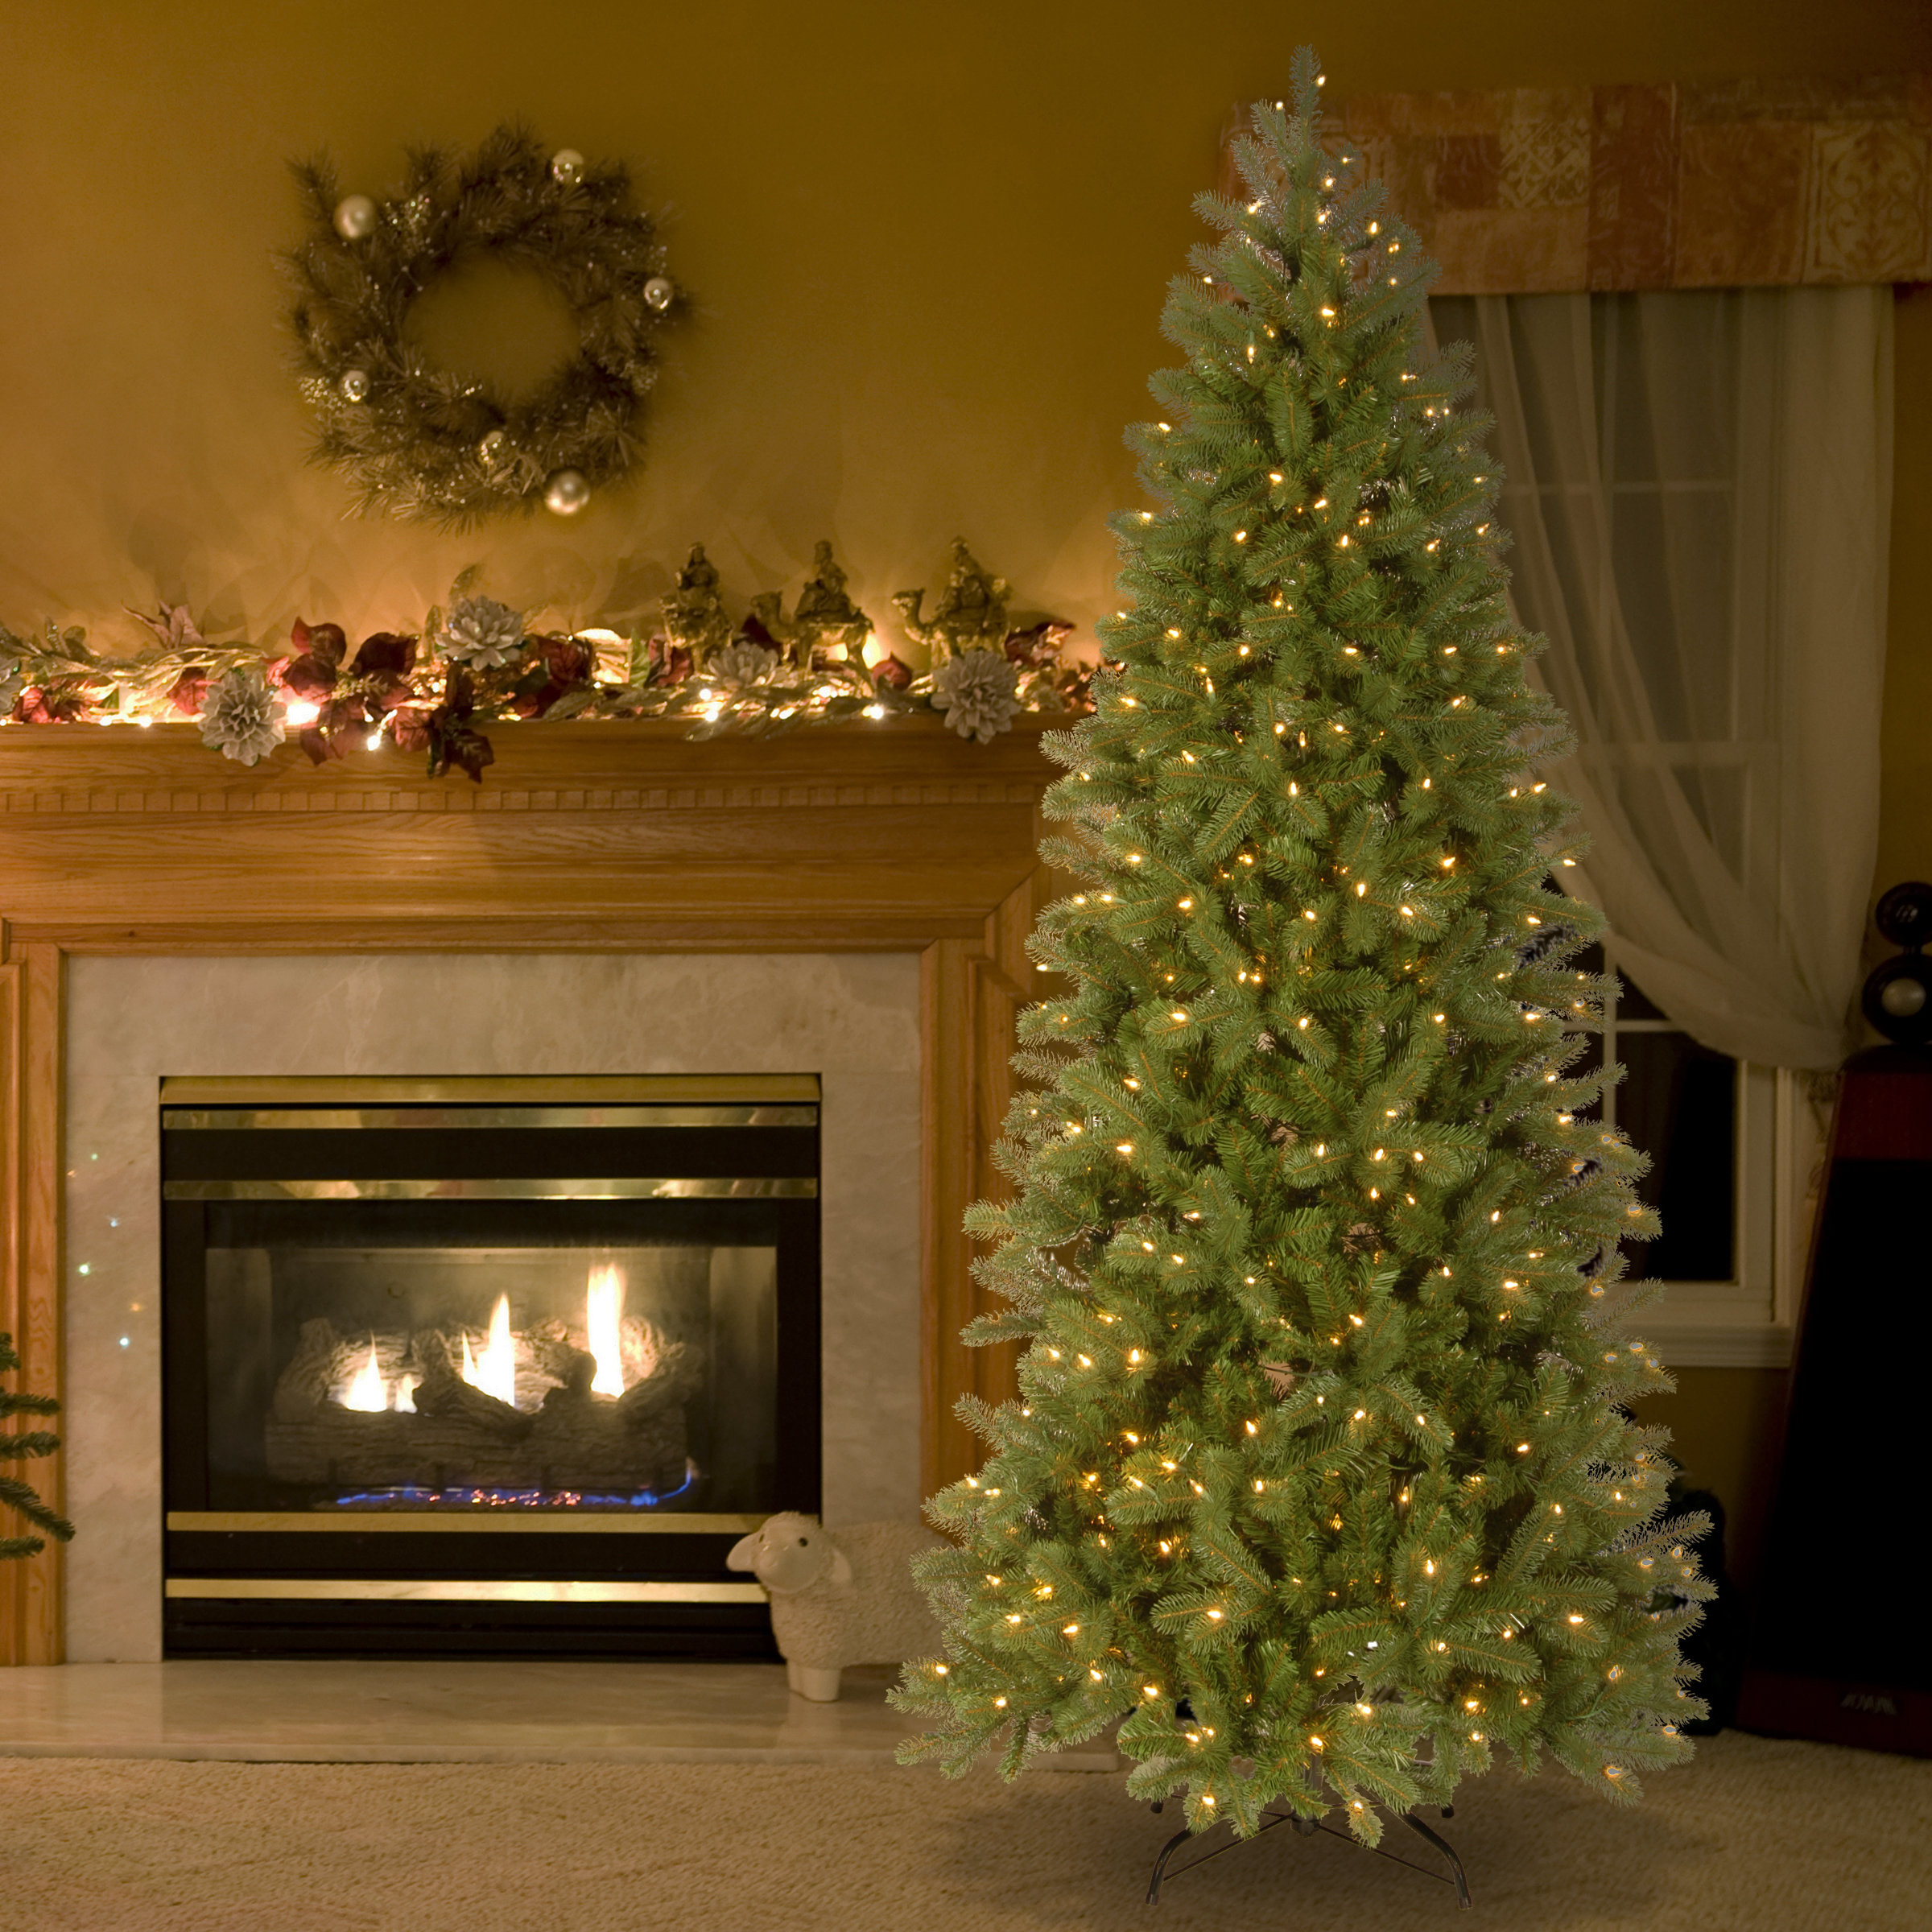 National Tree Co. Künstlicher Weihnachtsbaum mit 400 LED-Leuchten und  Ständer Poly